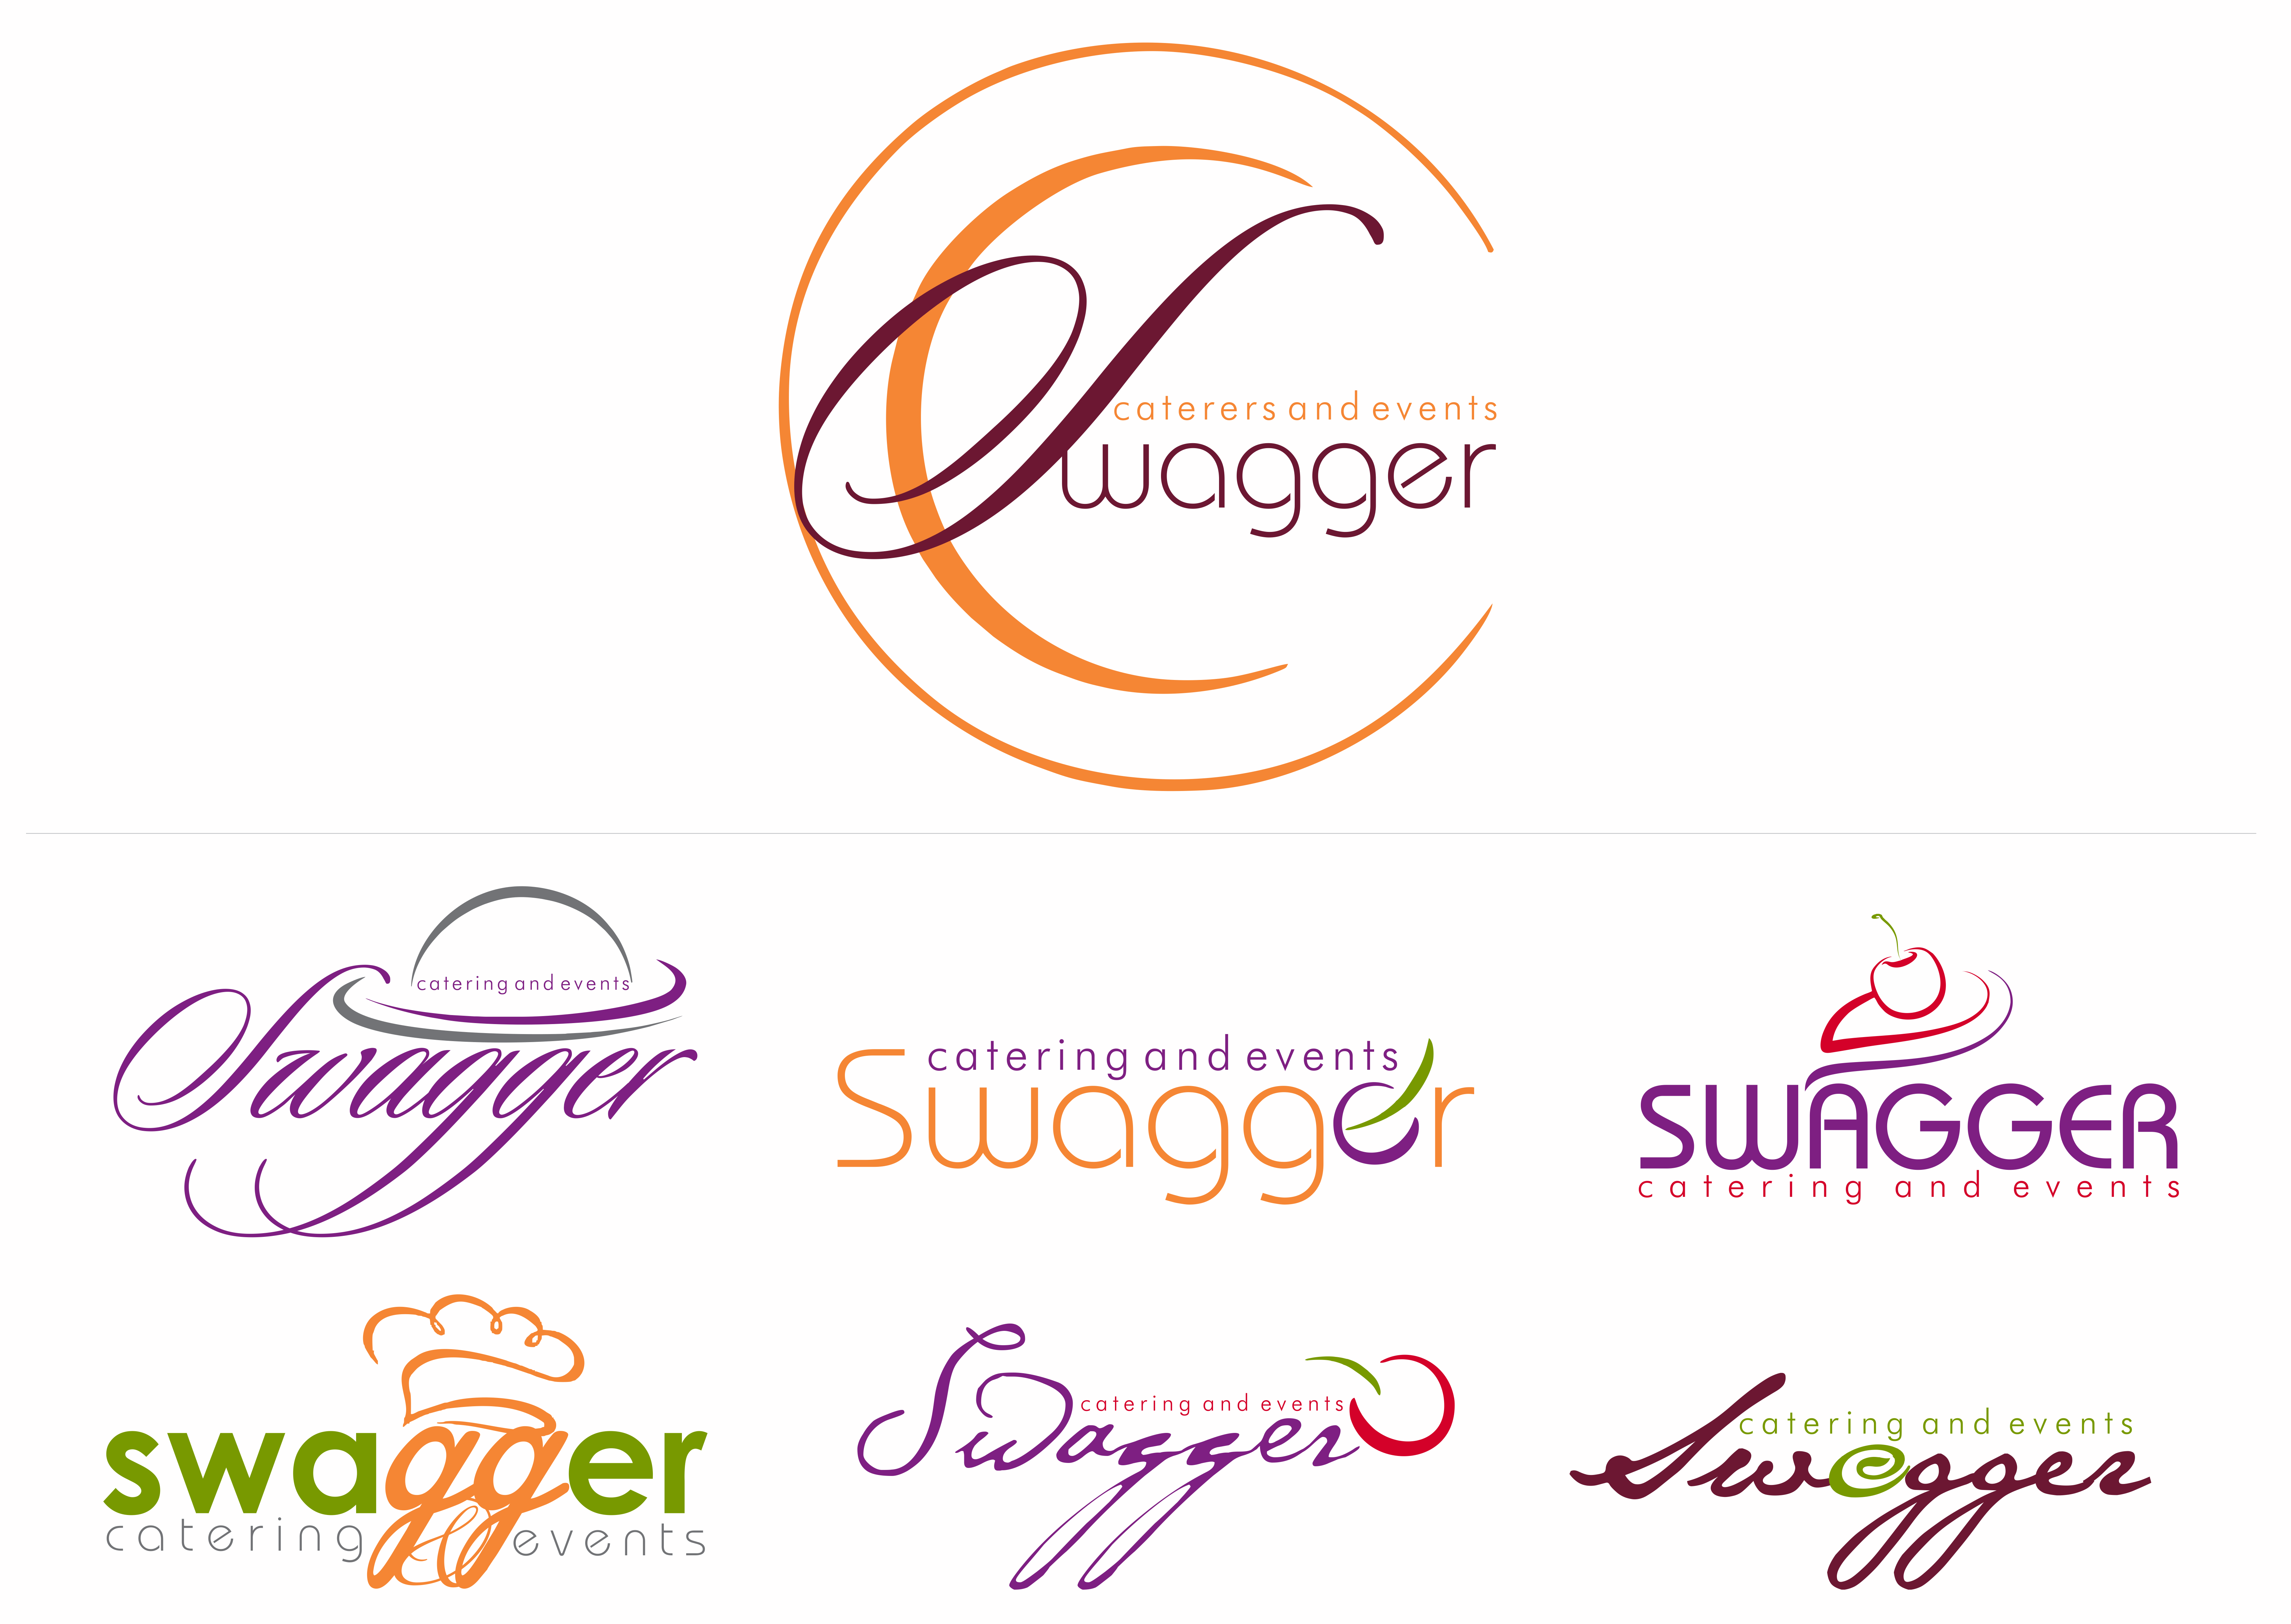 swagger logo design.gif